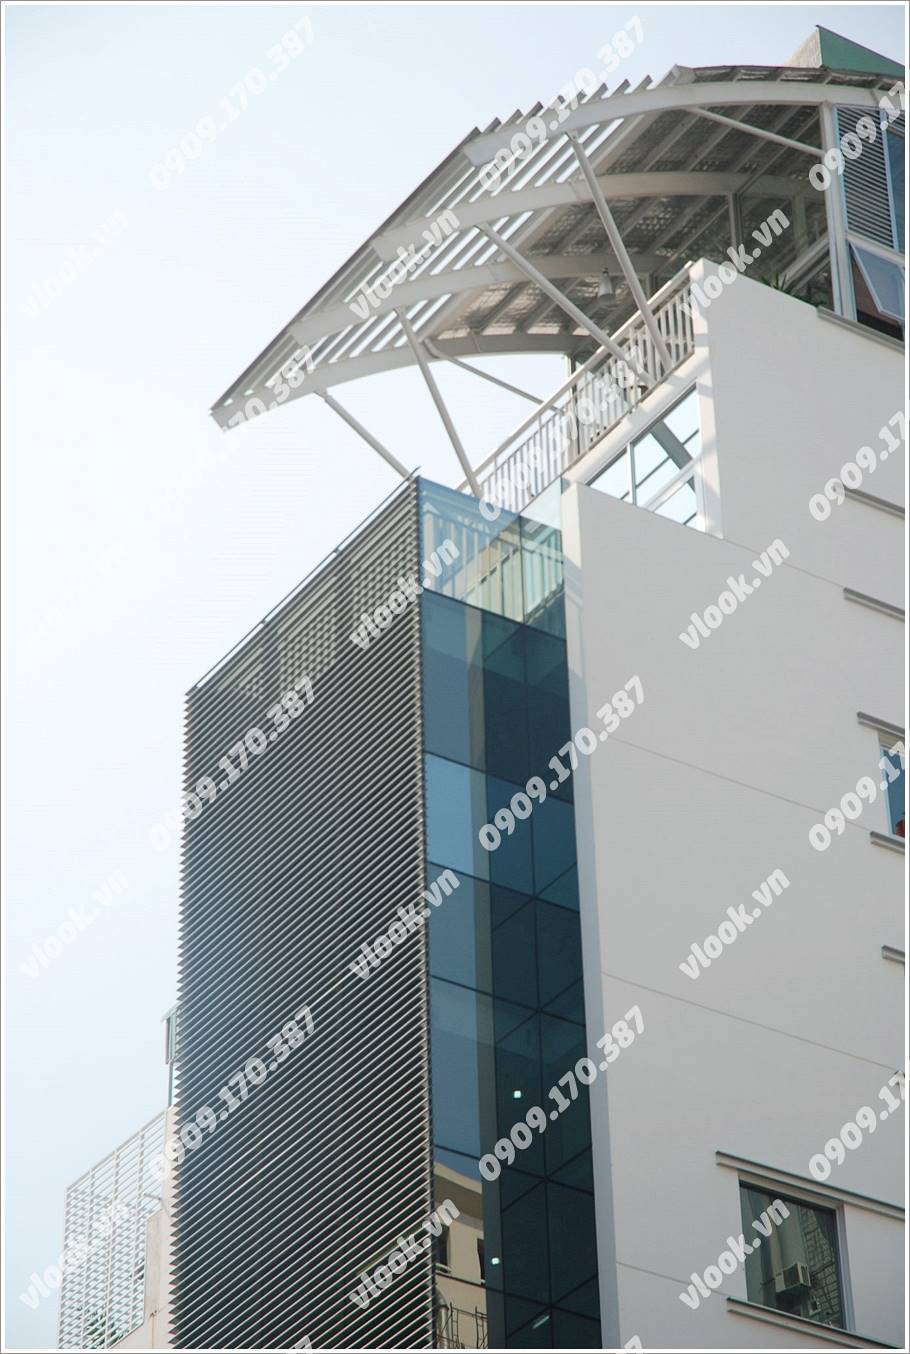 Cao ốc cho thuê văn phòng Dương Đại Building Thái Văn Lung Quận 1 TPHCM - vlook.vn